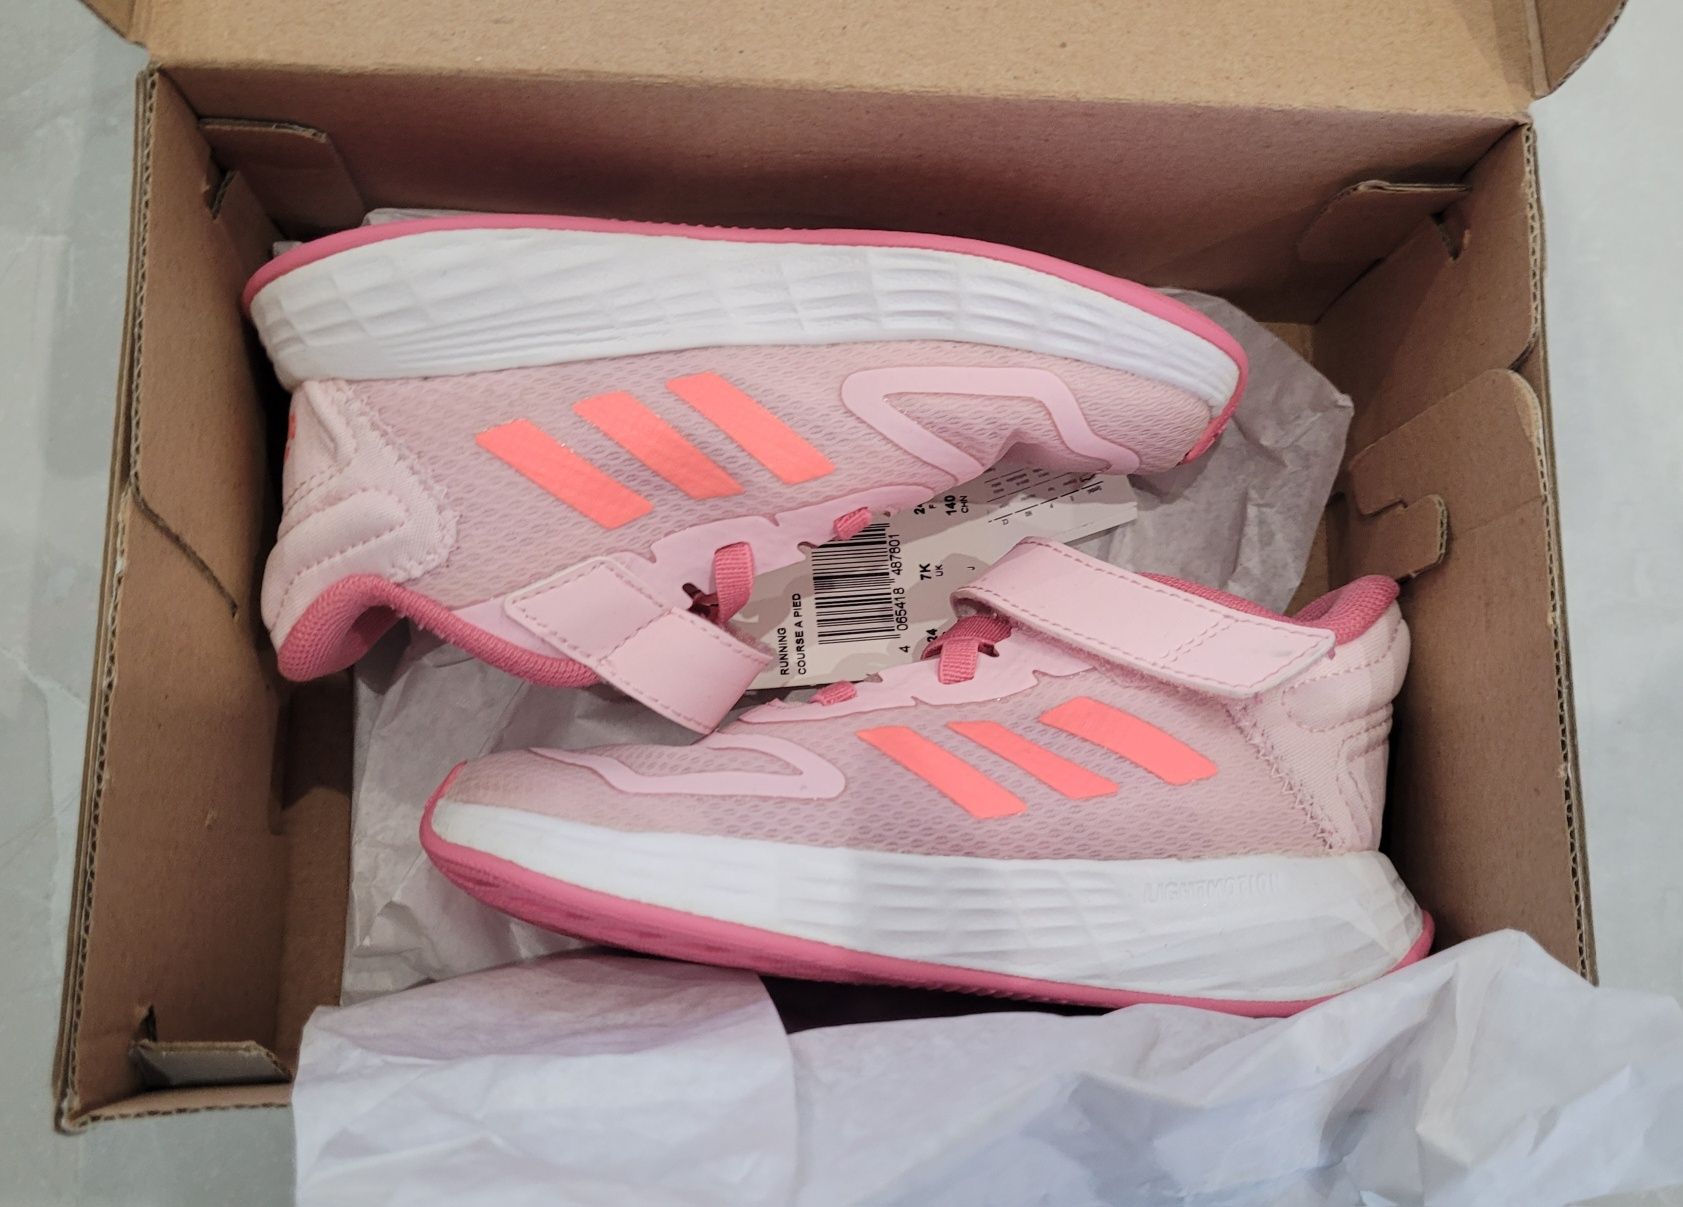 Buty dla dziewczynki Adidas r. 24